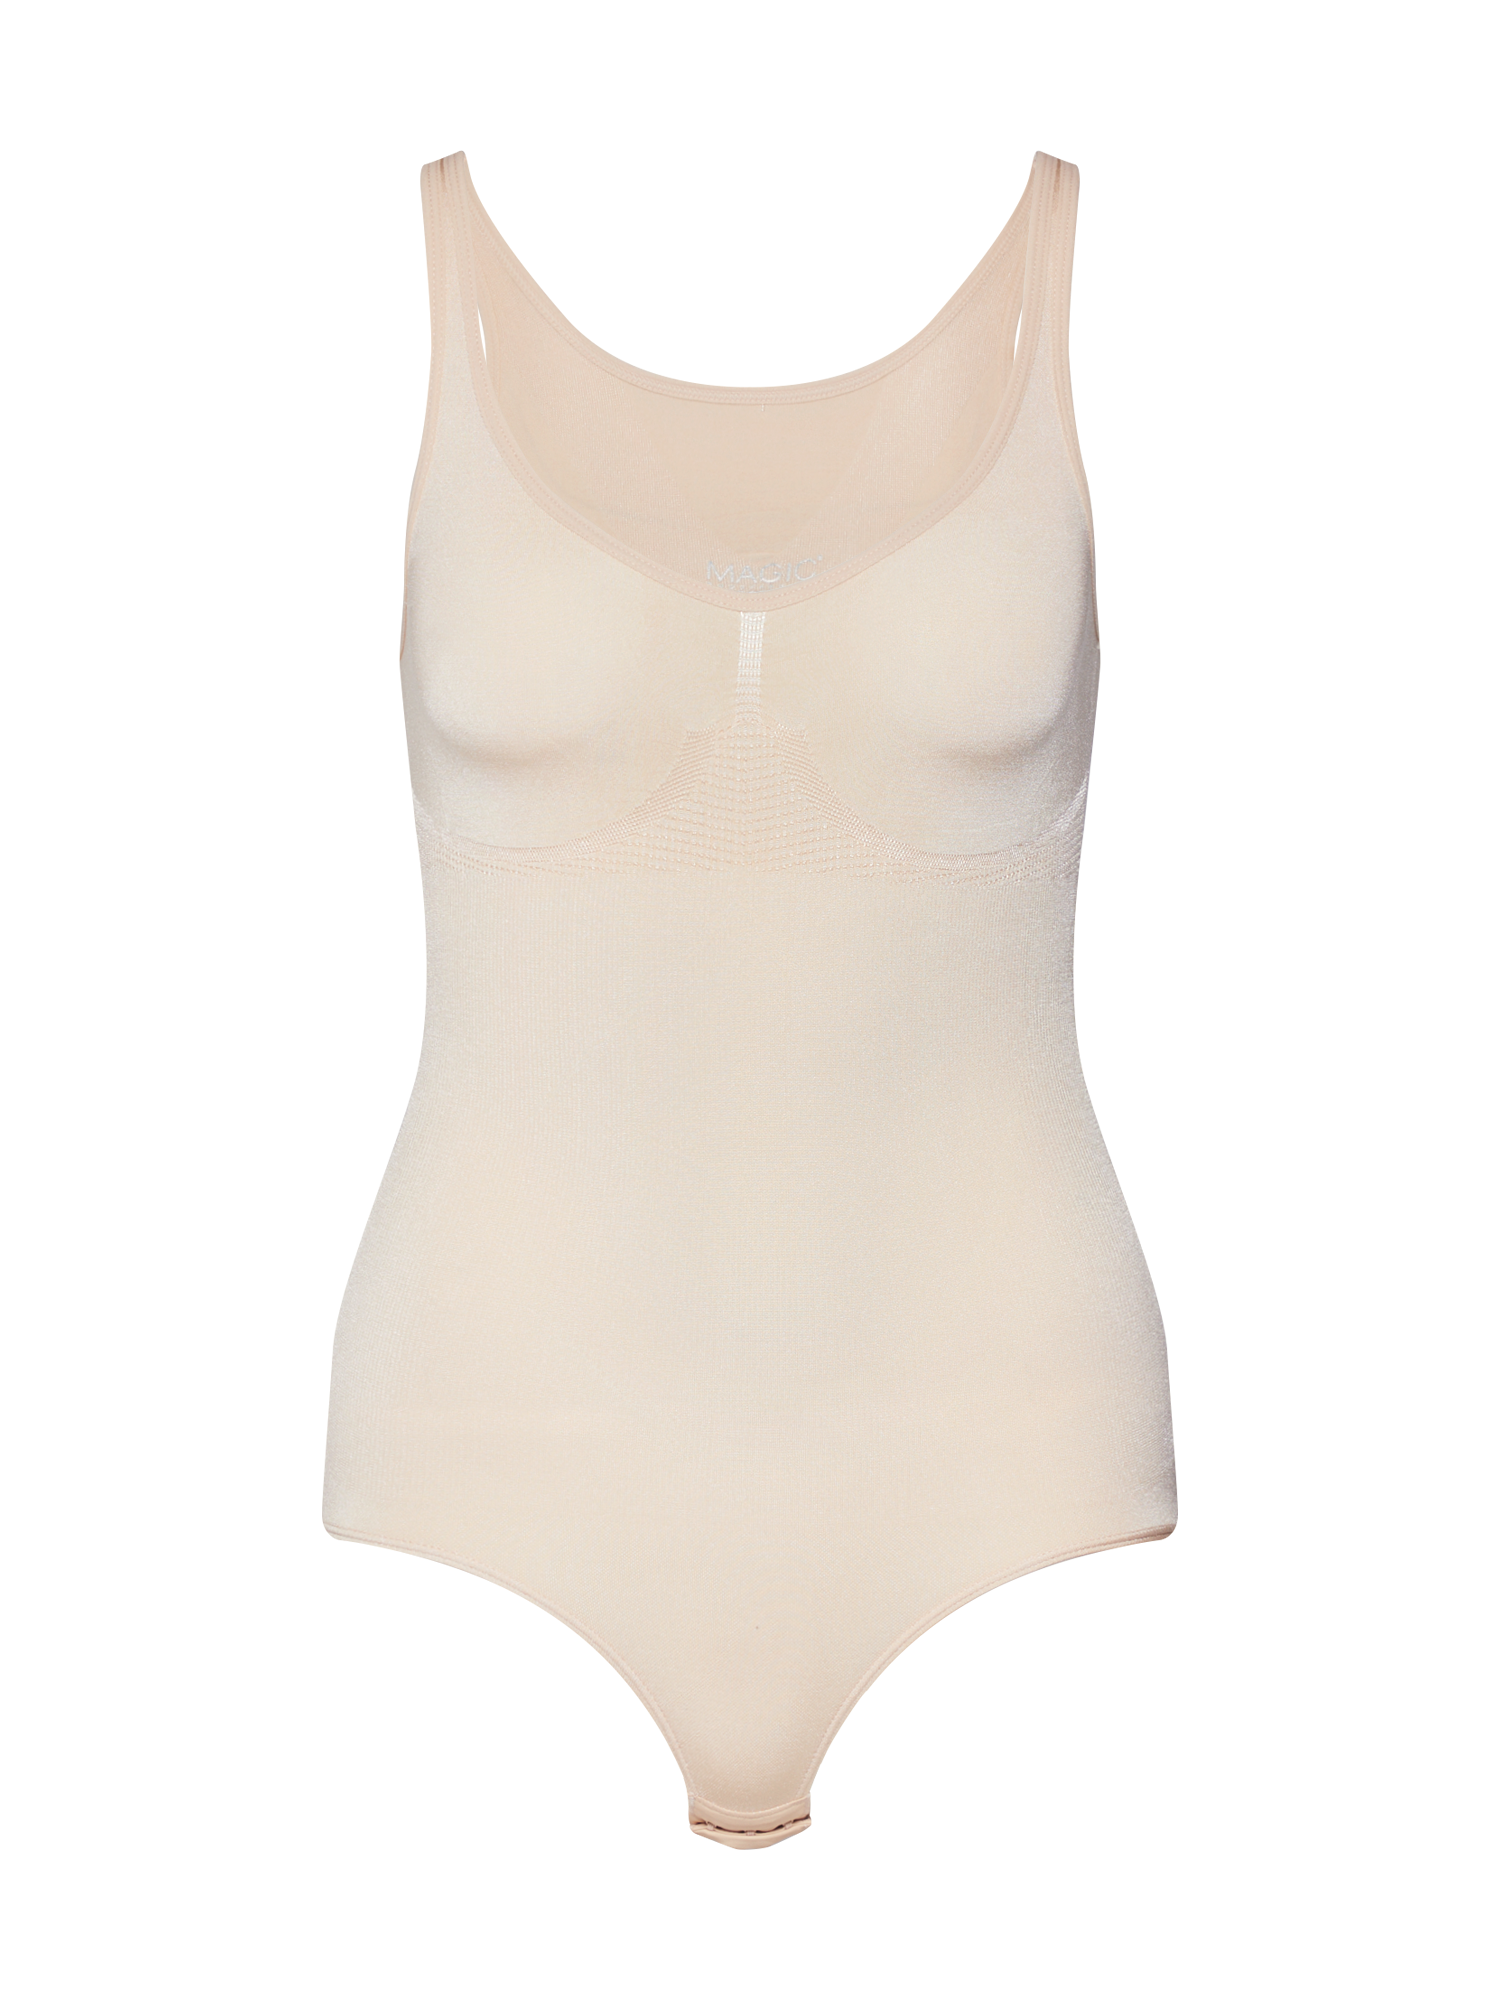 ULHJA Odzież MAGIC Bodyfashion Body modelujące Slimbody w kolorze Beżowy, Białym 